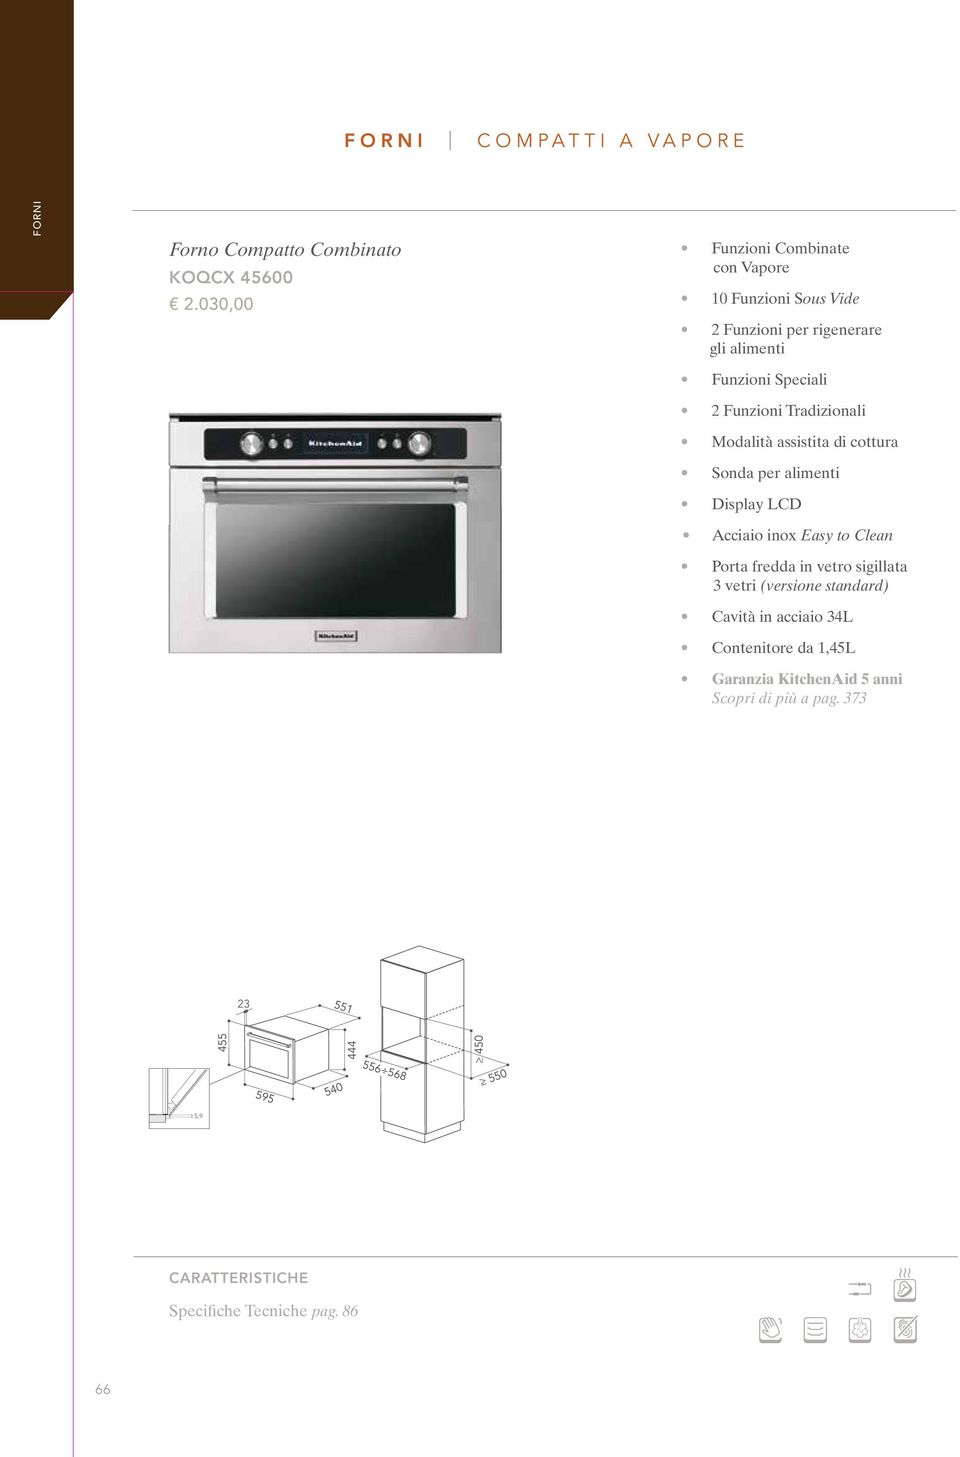 Tradizionali Modalità assistita di cottura Sonda per alimenti Display LCD Acciaio inox Easy to Clean Porta fredda in vetro